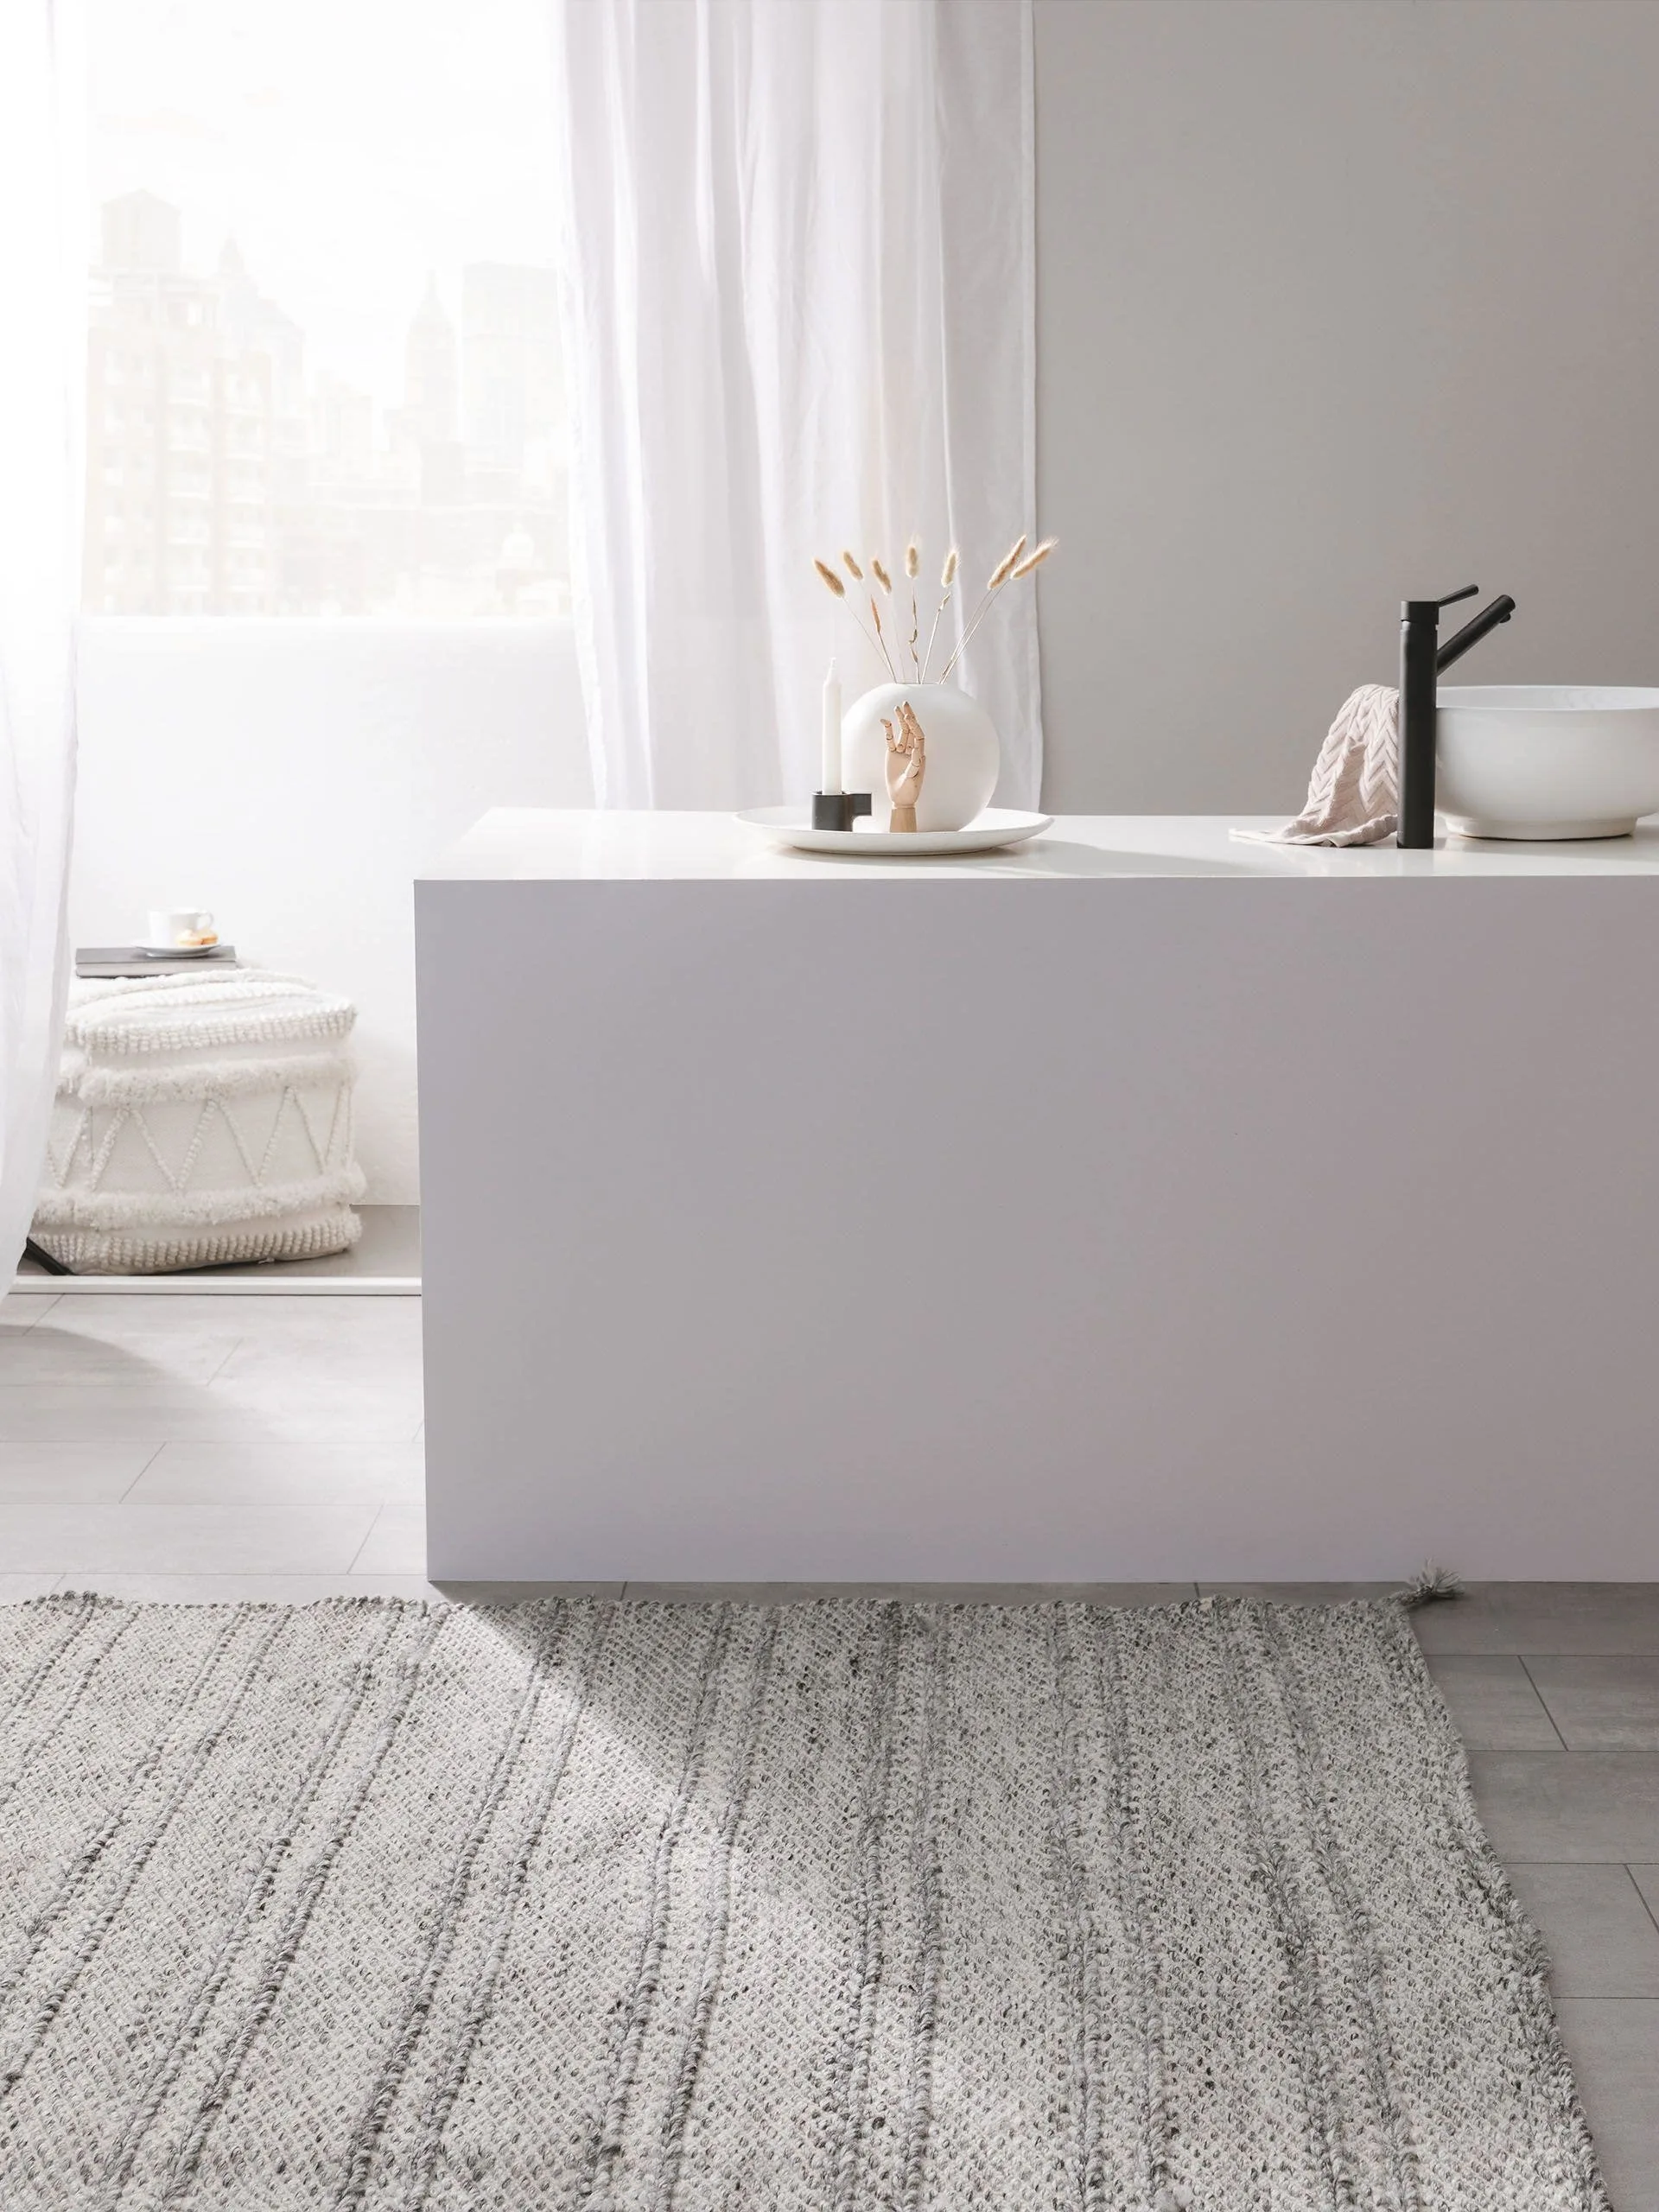 Minimalistisches Badezimmer mit Tageslicht mit moderner Waschbeckenarmatur in Weiß und einem großen, hellen Teppich